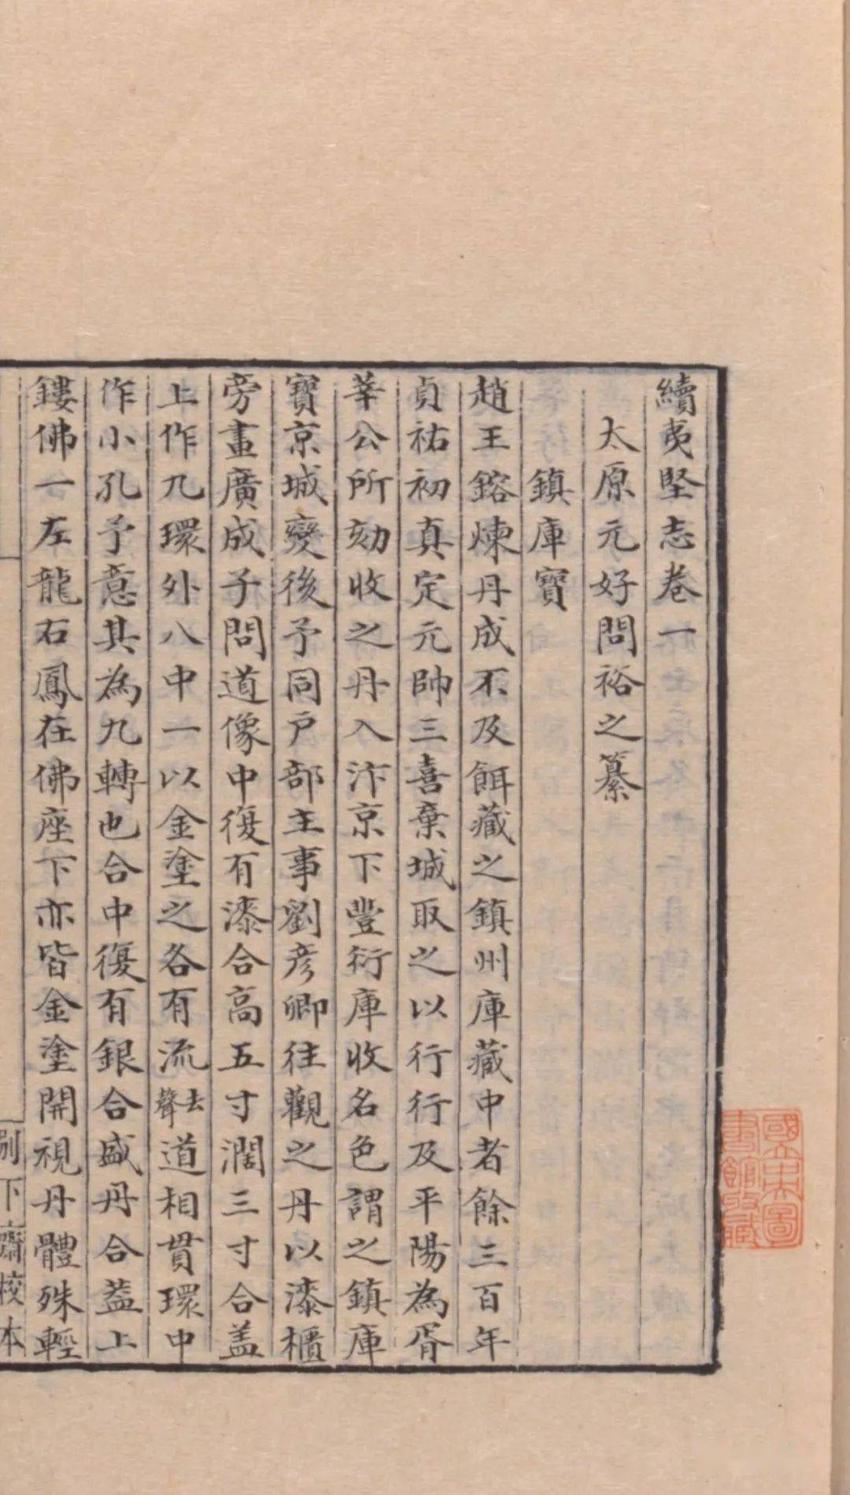 《续夷坚志》在中国小说史上为何有着重要地位